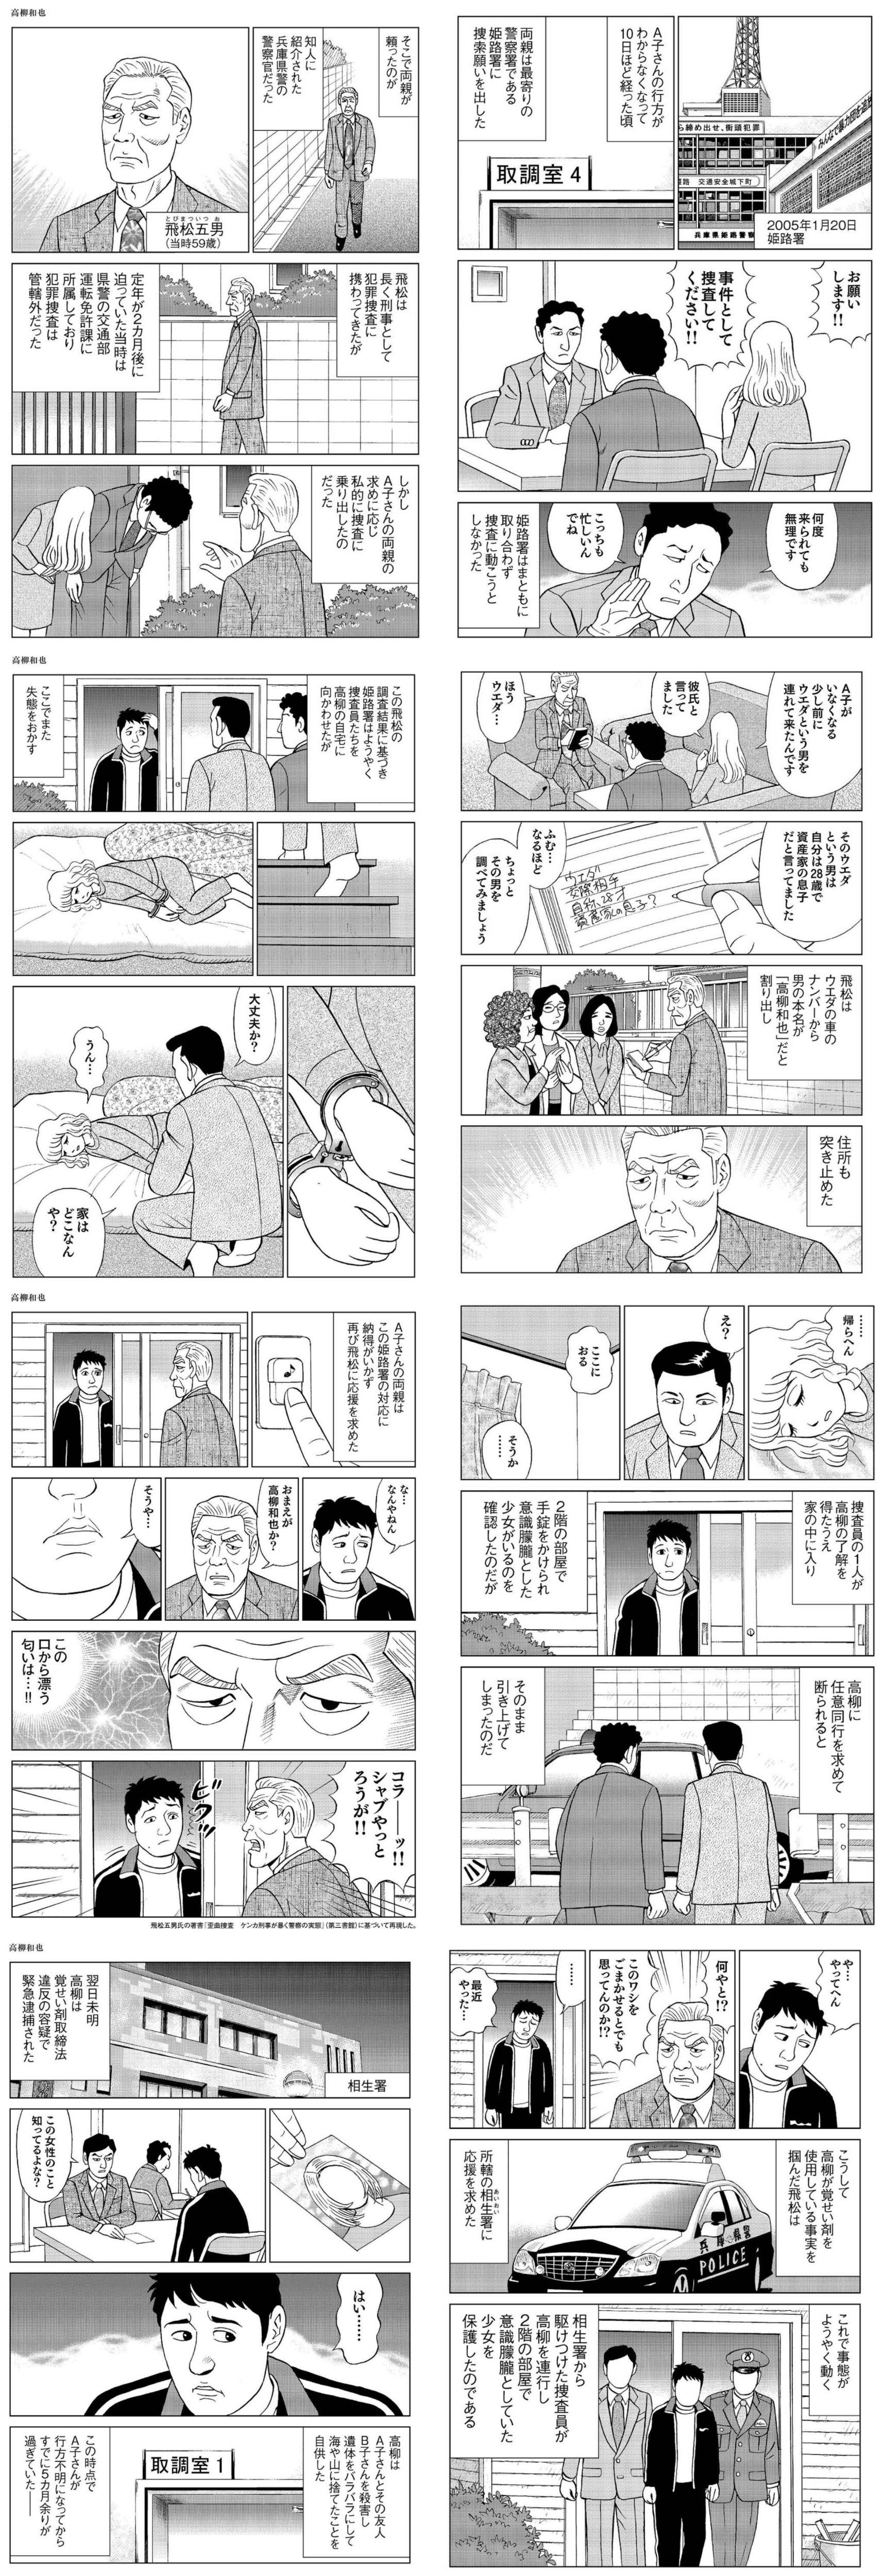 【画像】姫路警察さん、この漫画でとんでもない無能っぷりが明らかになってしまうwww